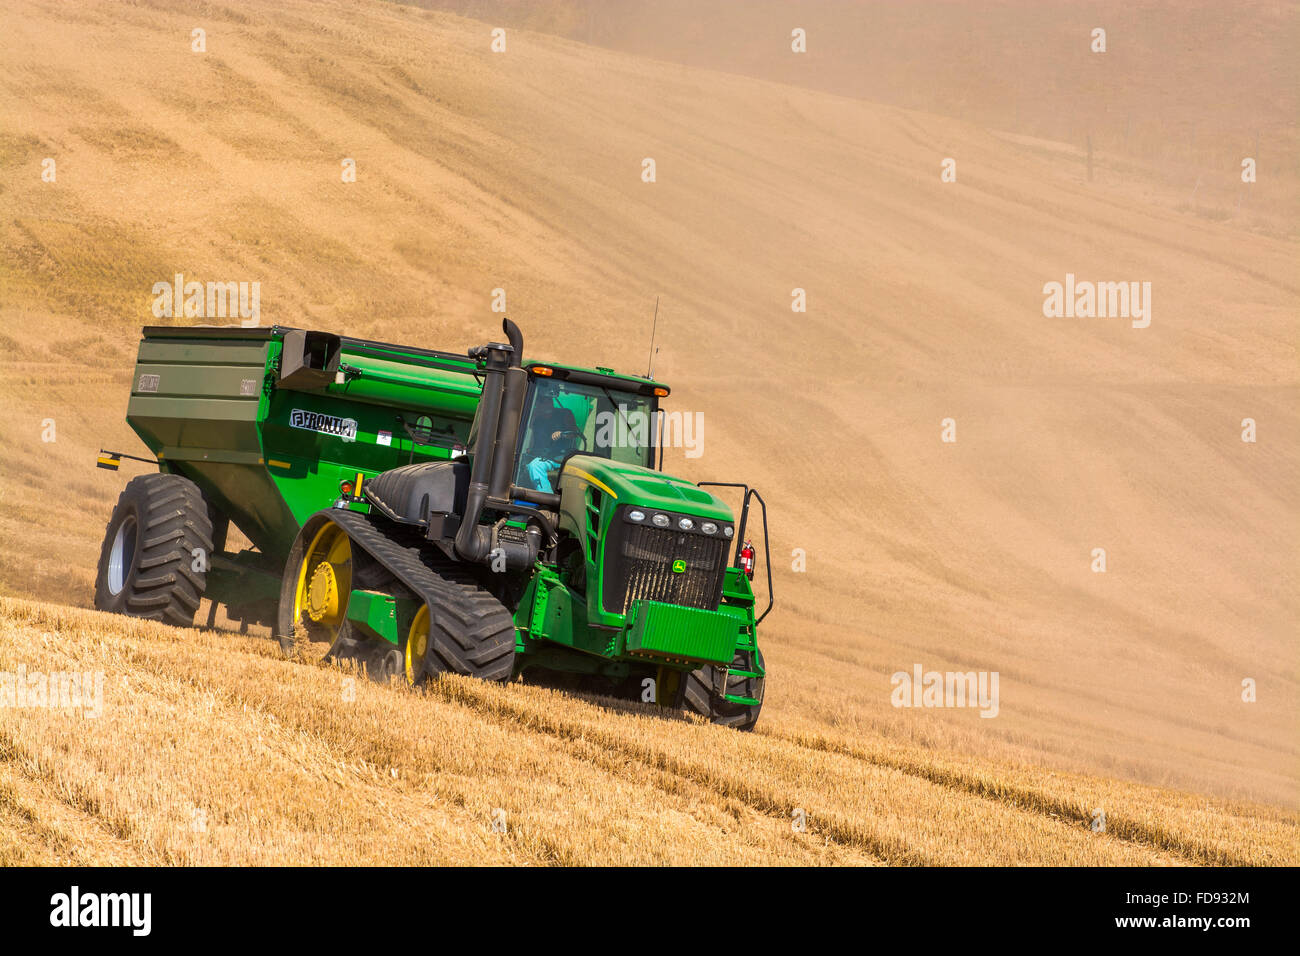 Tracteur John Deere tirant un chariot de céréales au cours de récoltes de blé dans la région de Eastern Washington Palouse Banque D'Images